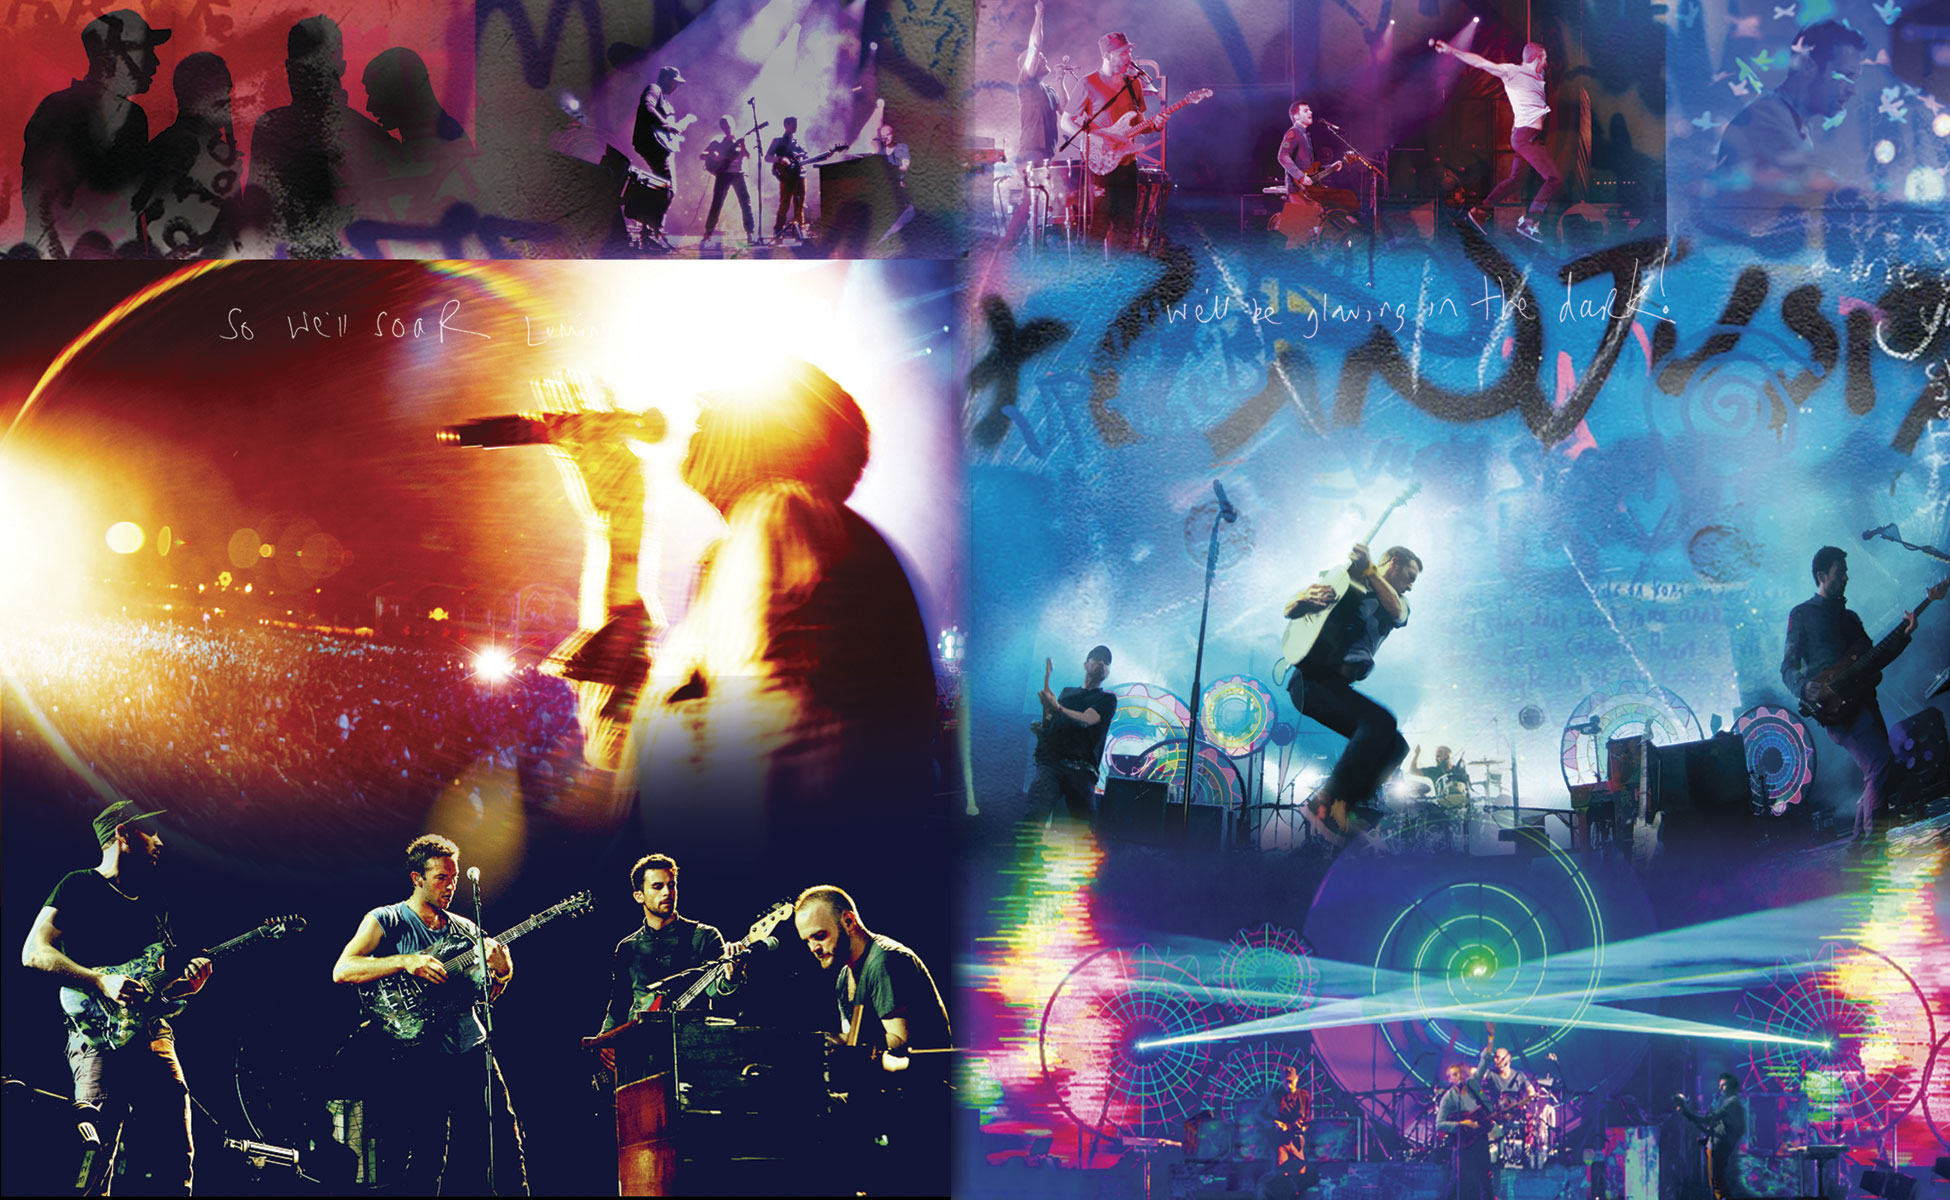 Coldplay Viva La Vida Clip Wallpaper Wallpaperlepi